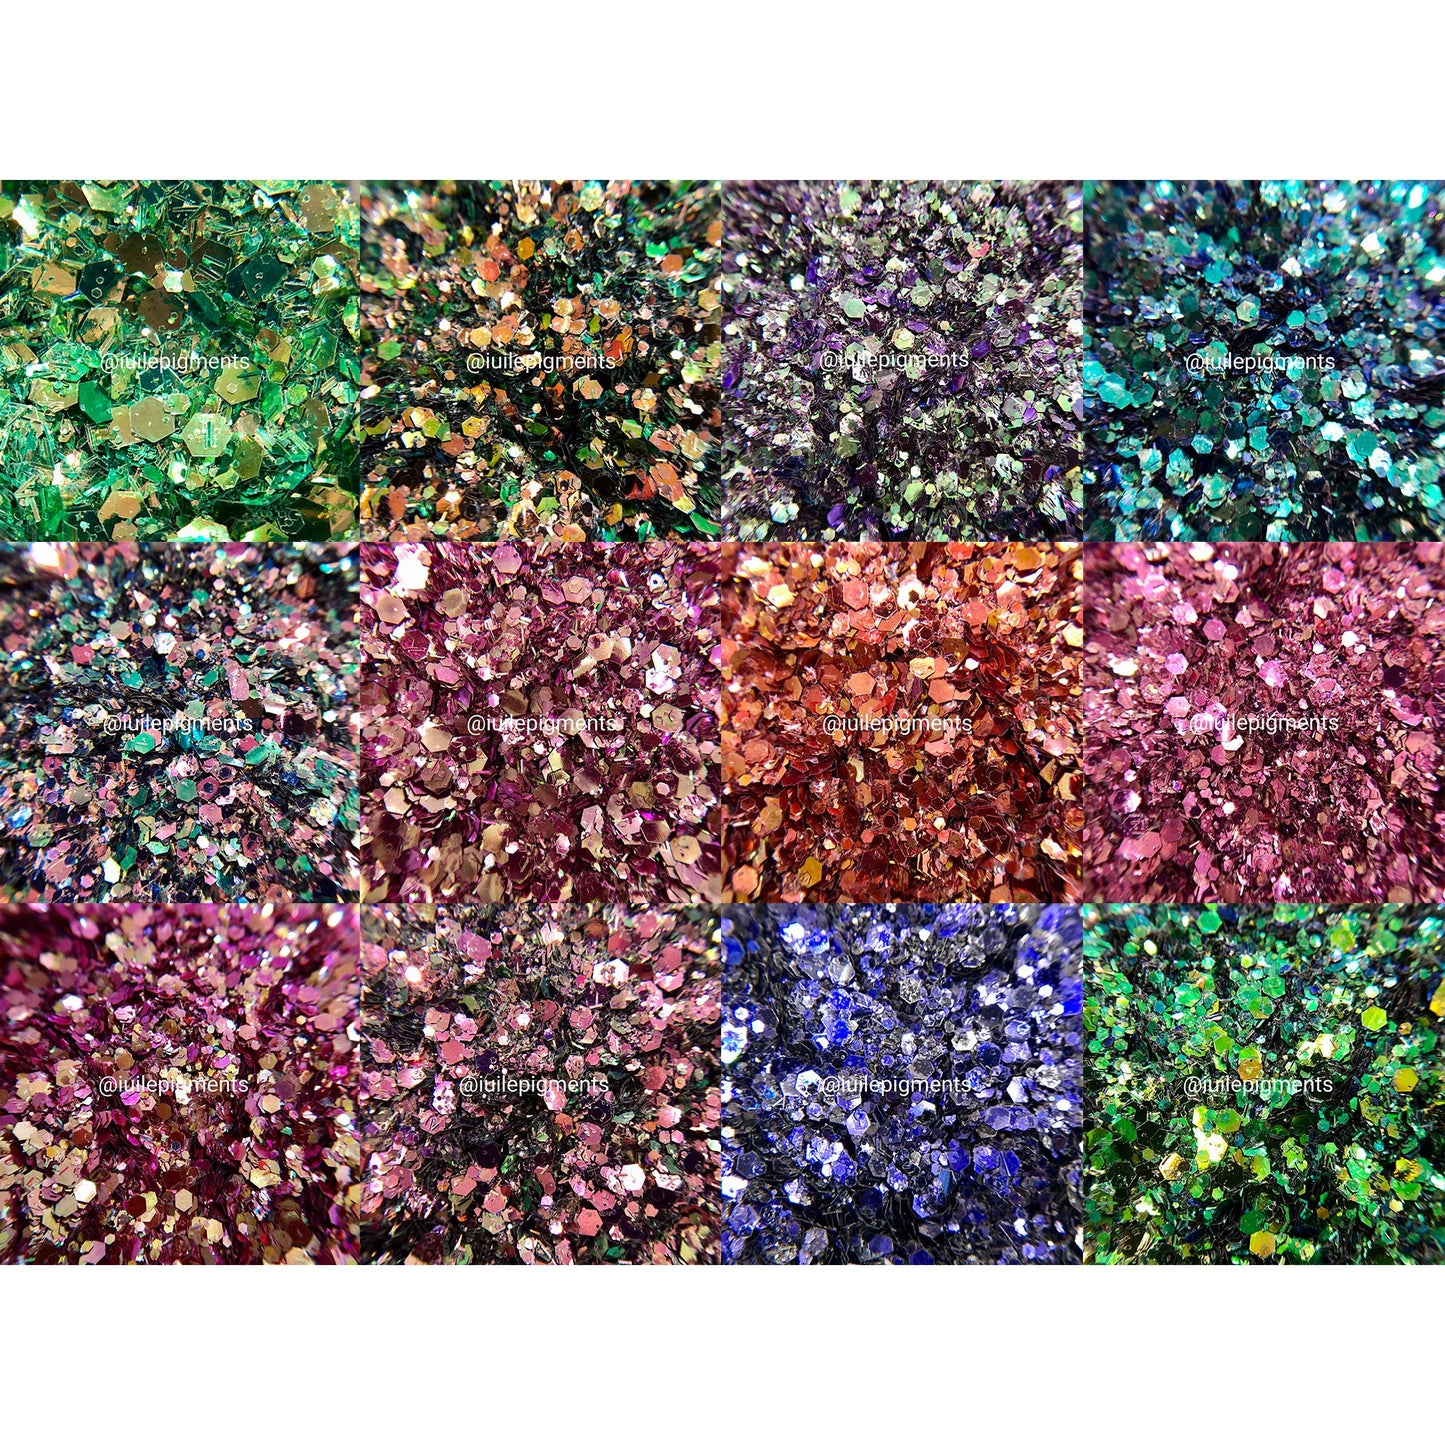 10g, 30G Y5G Glitter Colorshift Chameleon Chunky Nail DIY Resin Epoxy Art Craft